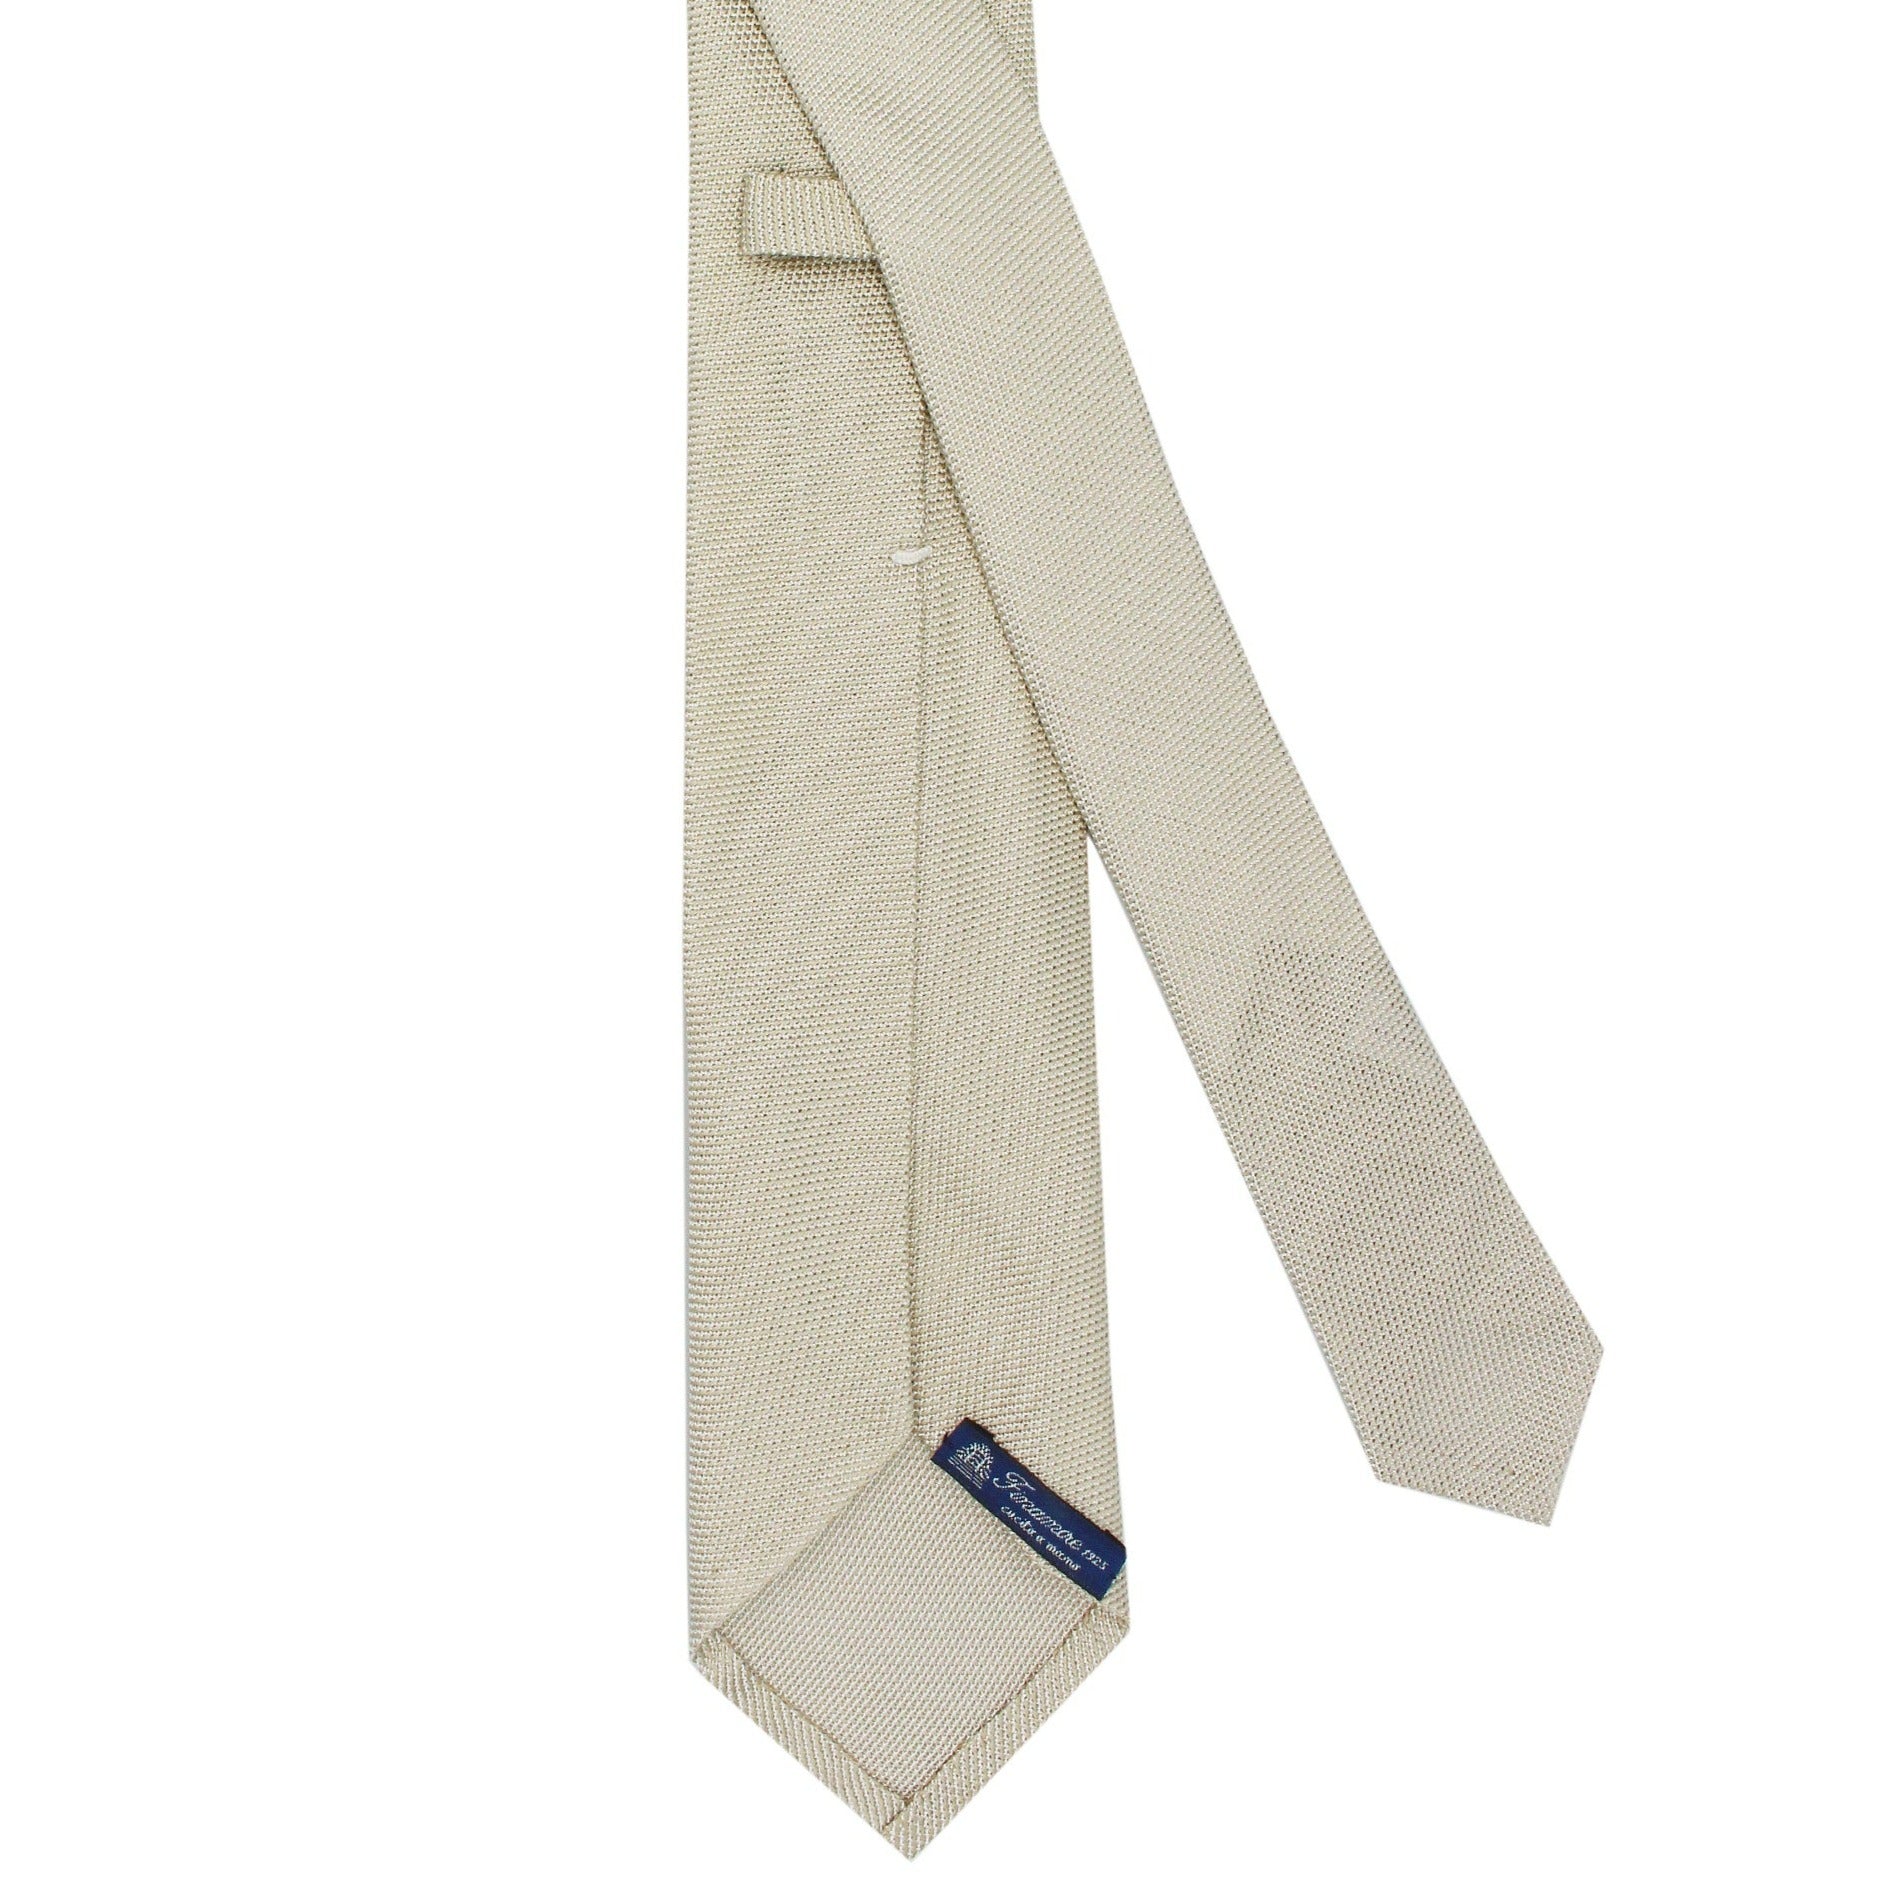 Chiaia tie with silk gauze sand single background